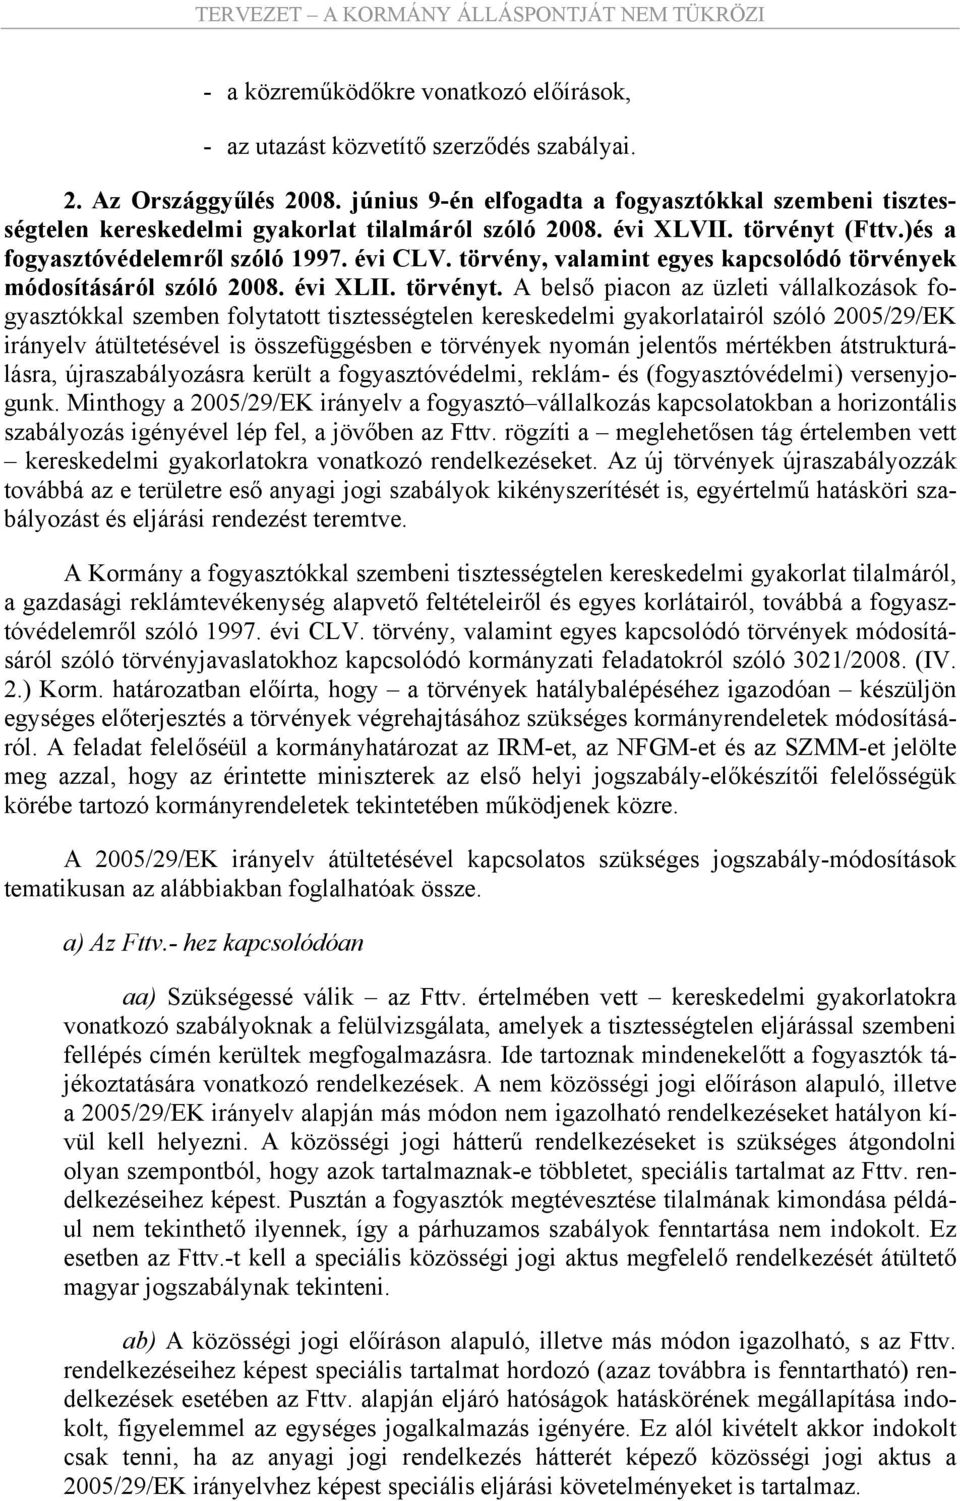 törvény, valamint egyes kapcsolódó törvények módosításáról szóló 2008. évi XLII. törvényt.